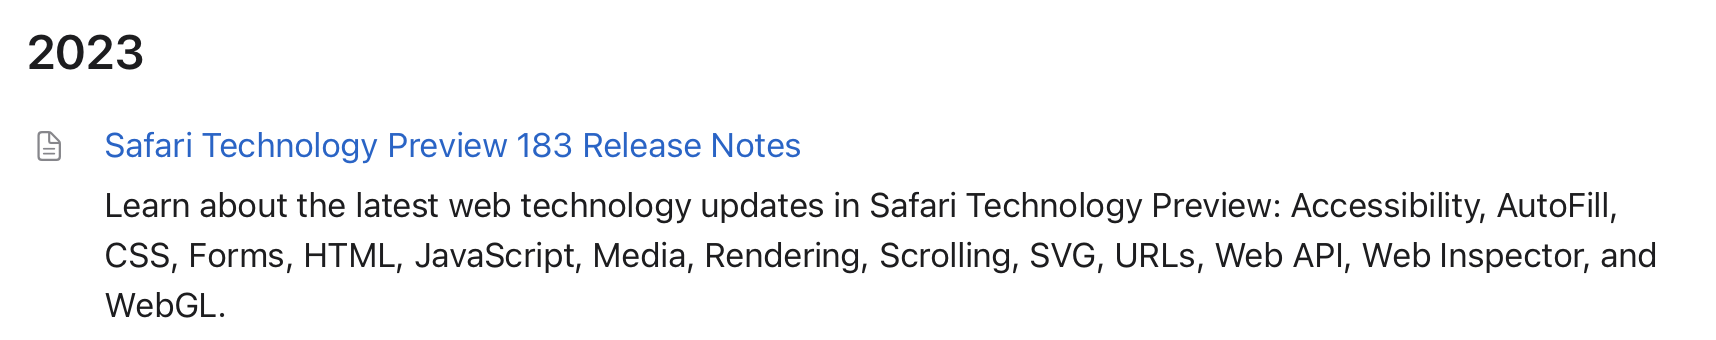 苹果发布 Safari 浏览器技术预览版 183